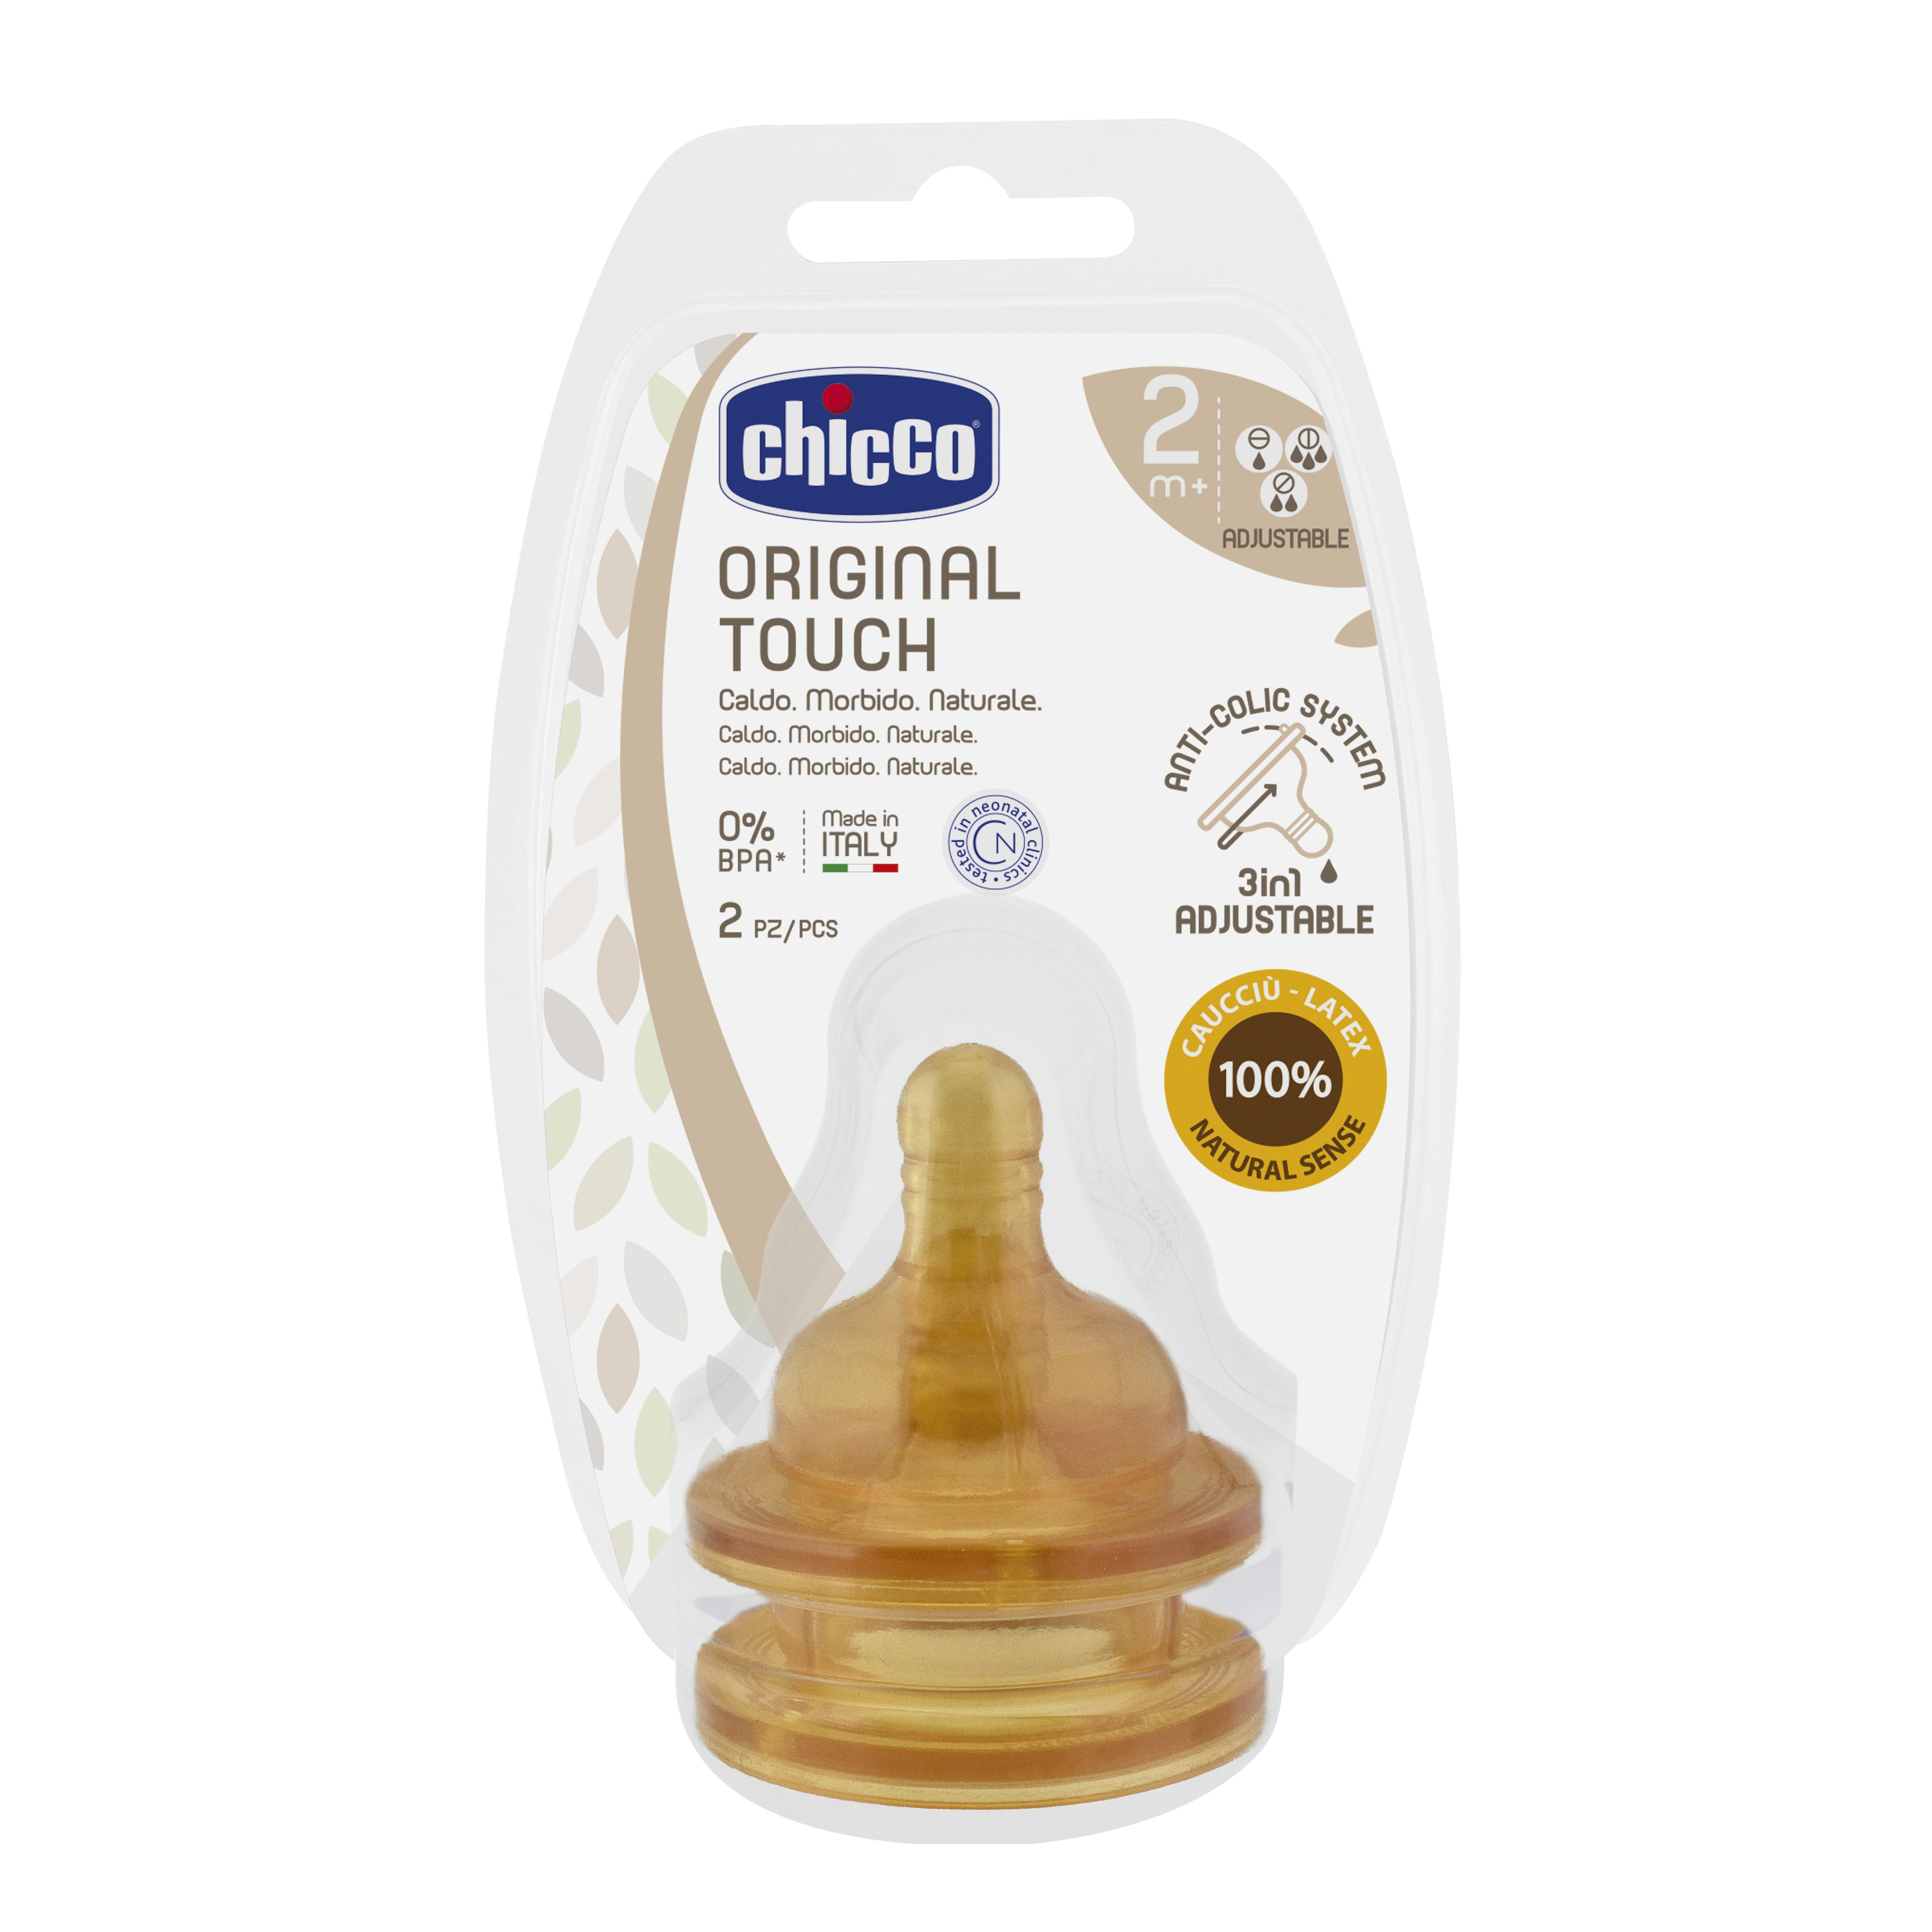 Chicco Biberon Original Touch Vetro Unisex 1 Foro Caucciù 0 Mesi+ 150ml, Farmacia Soccavo